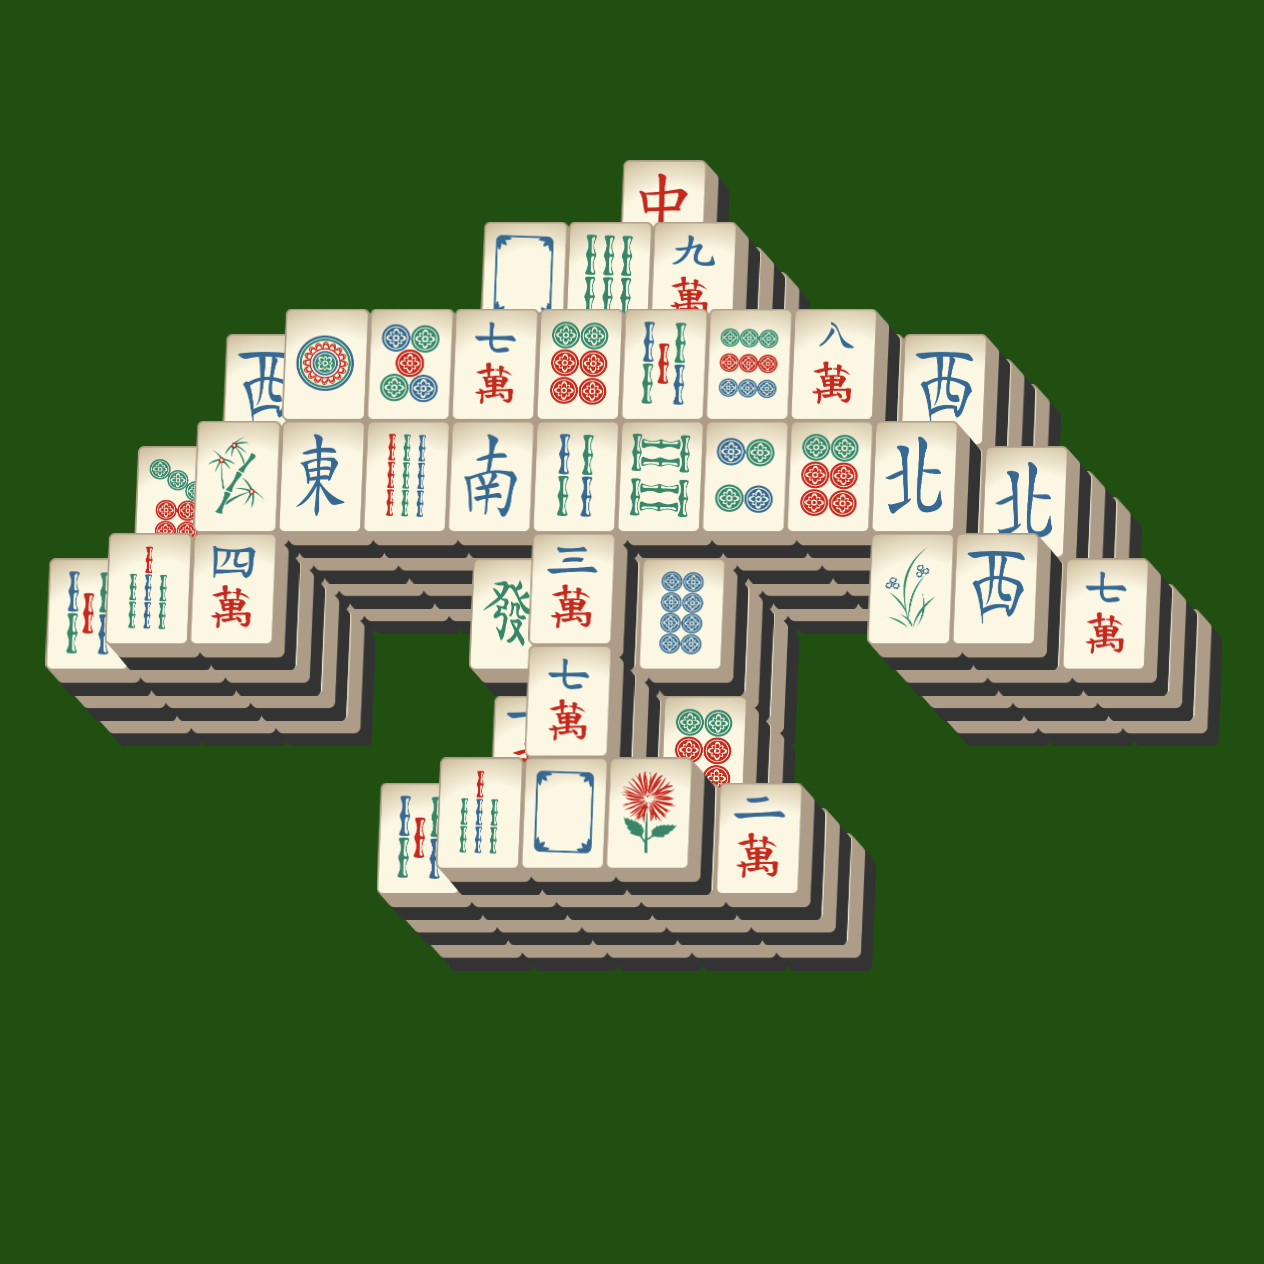 mahjong solitaire online